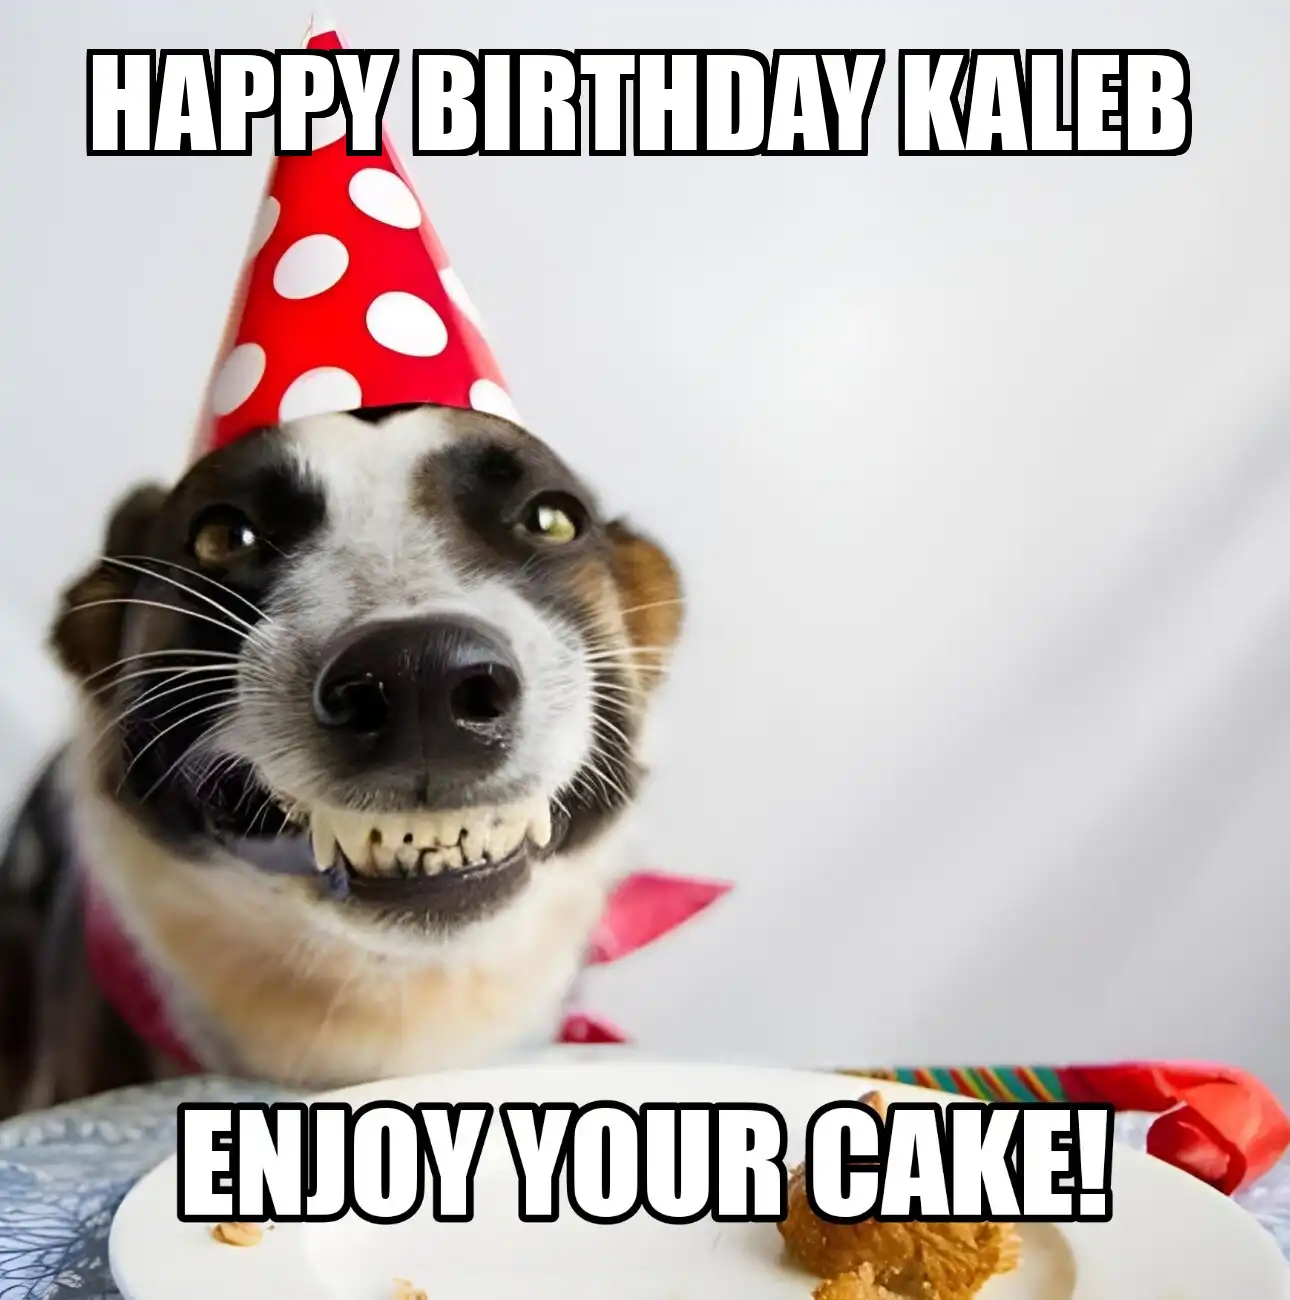 Happy Birthday Kaleb Enjoy Your Cake Dog Meme